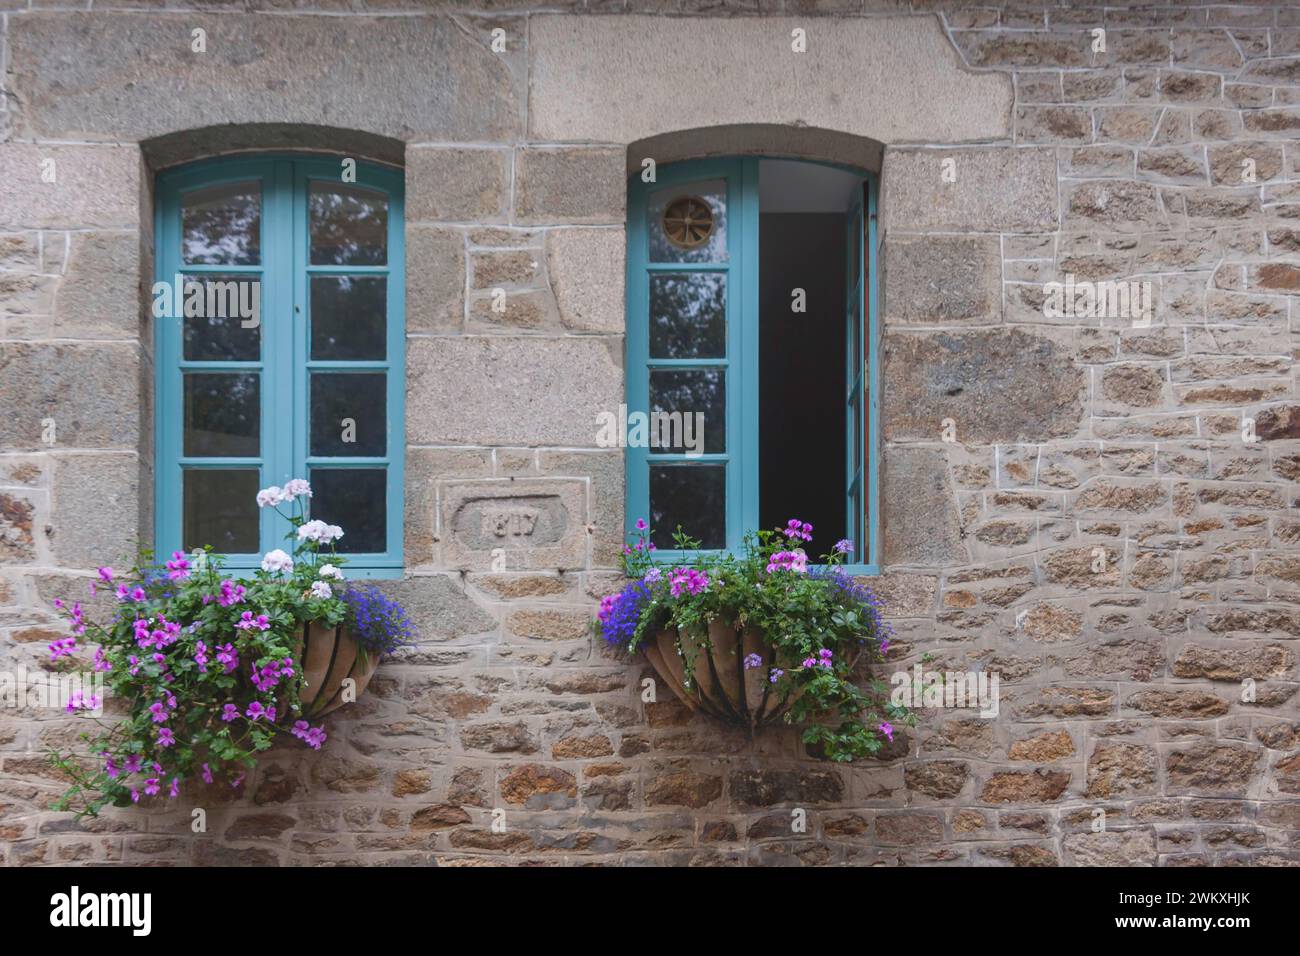 Deux fenêtres dans une maison typique en granit, décoration florale, vieille ville de Dinan, Bretagne, France Banque D'Images